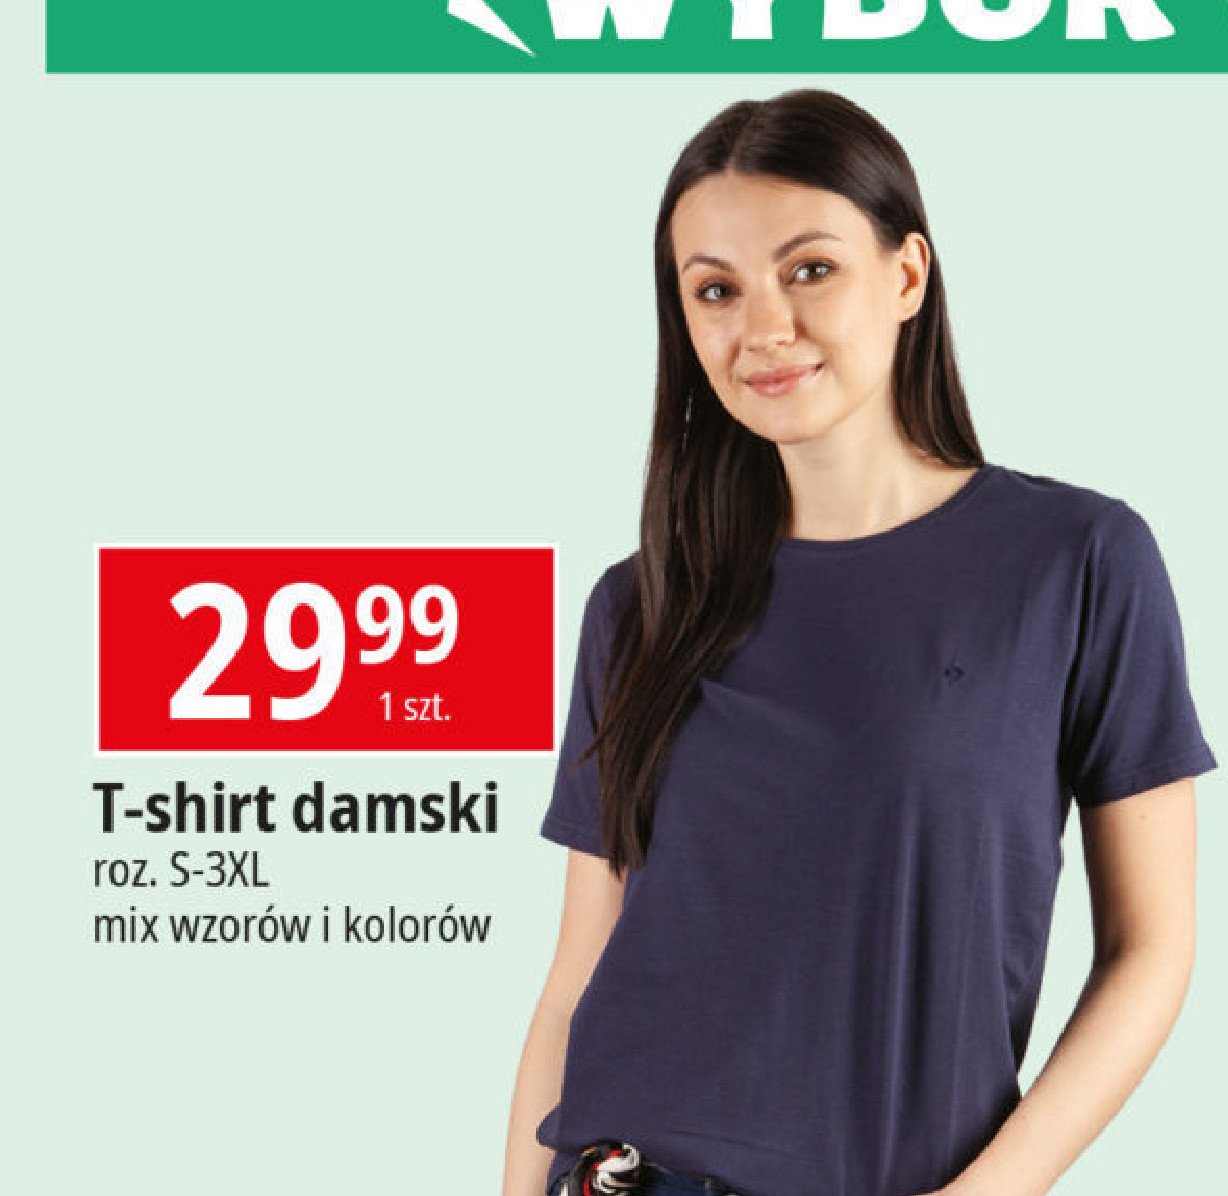 T-shirt damski s-3xl promocja